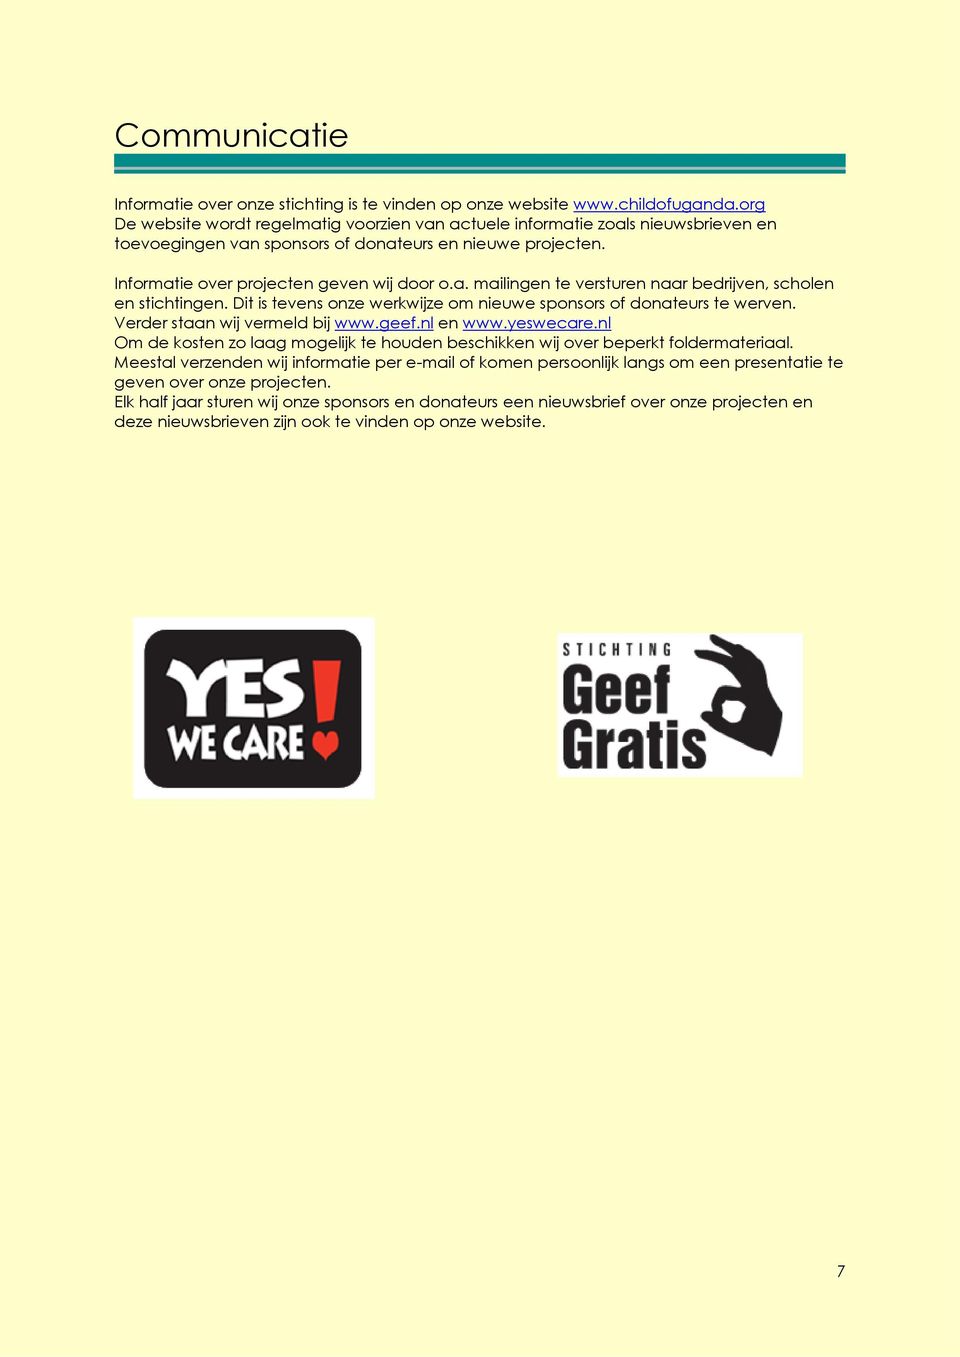 Dit is tevens onze werkwijze om nieuwe sponsors of donateurs te werven. Verder staan wij vermeld bij www.geef.nl en www.yeswecare.